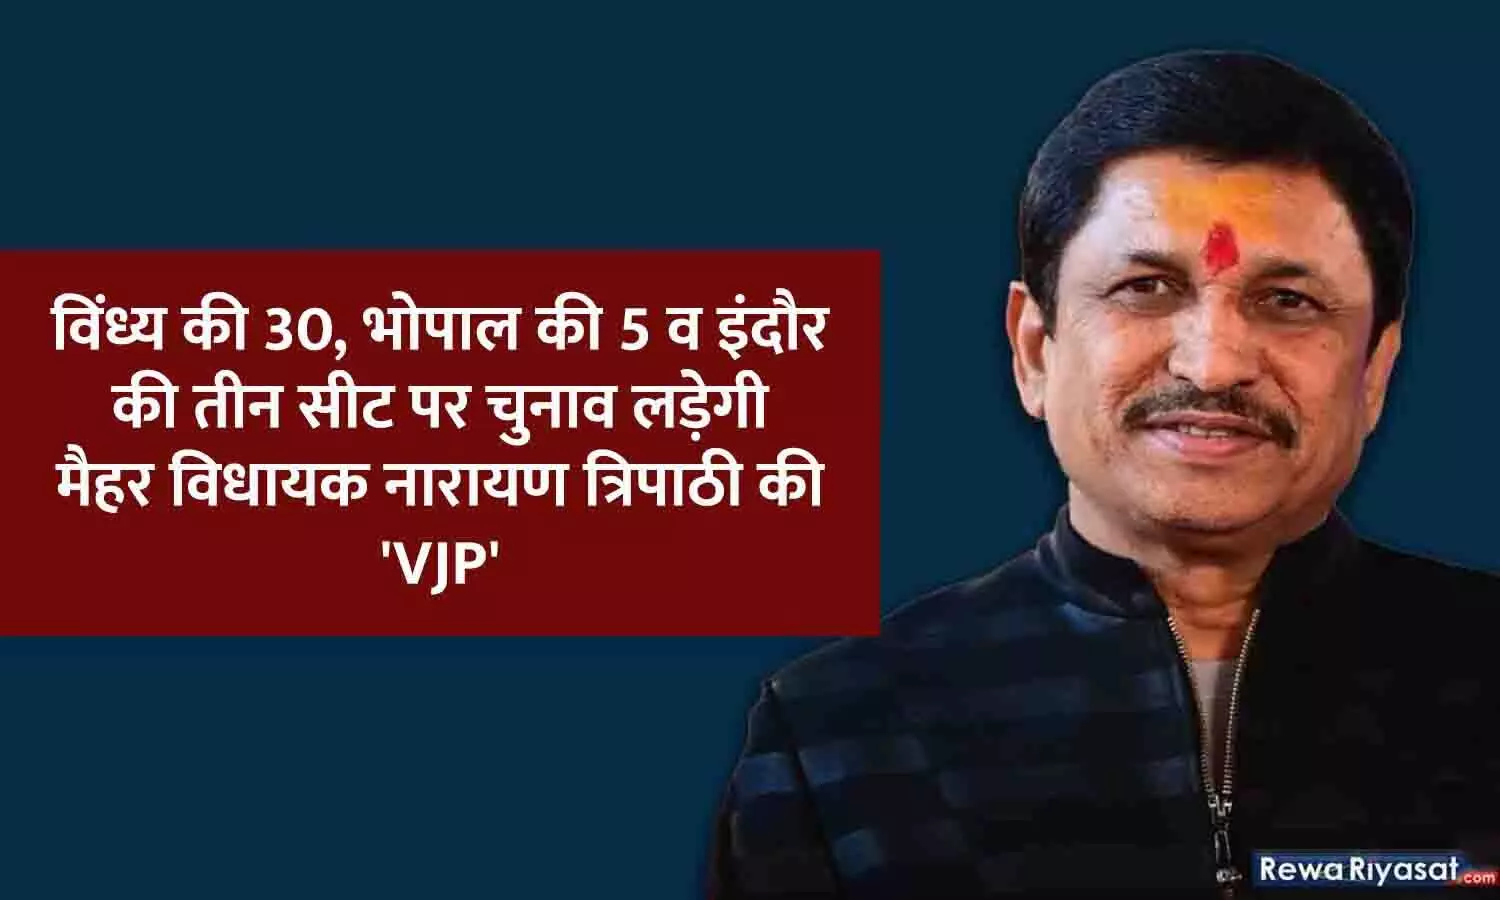 विंध्य की 30, भोपाल की 5 व इंदौर की तीन सीट पर चुनाव लड़ेगी मैहर विधायक नारायण त्रिपाठी की VJP